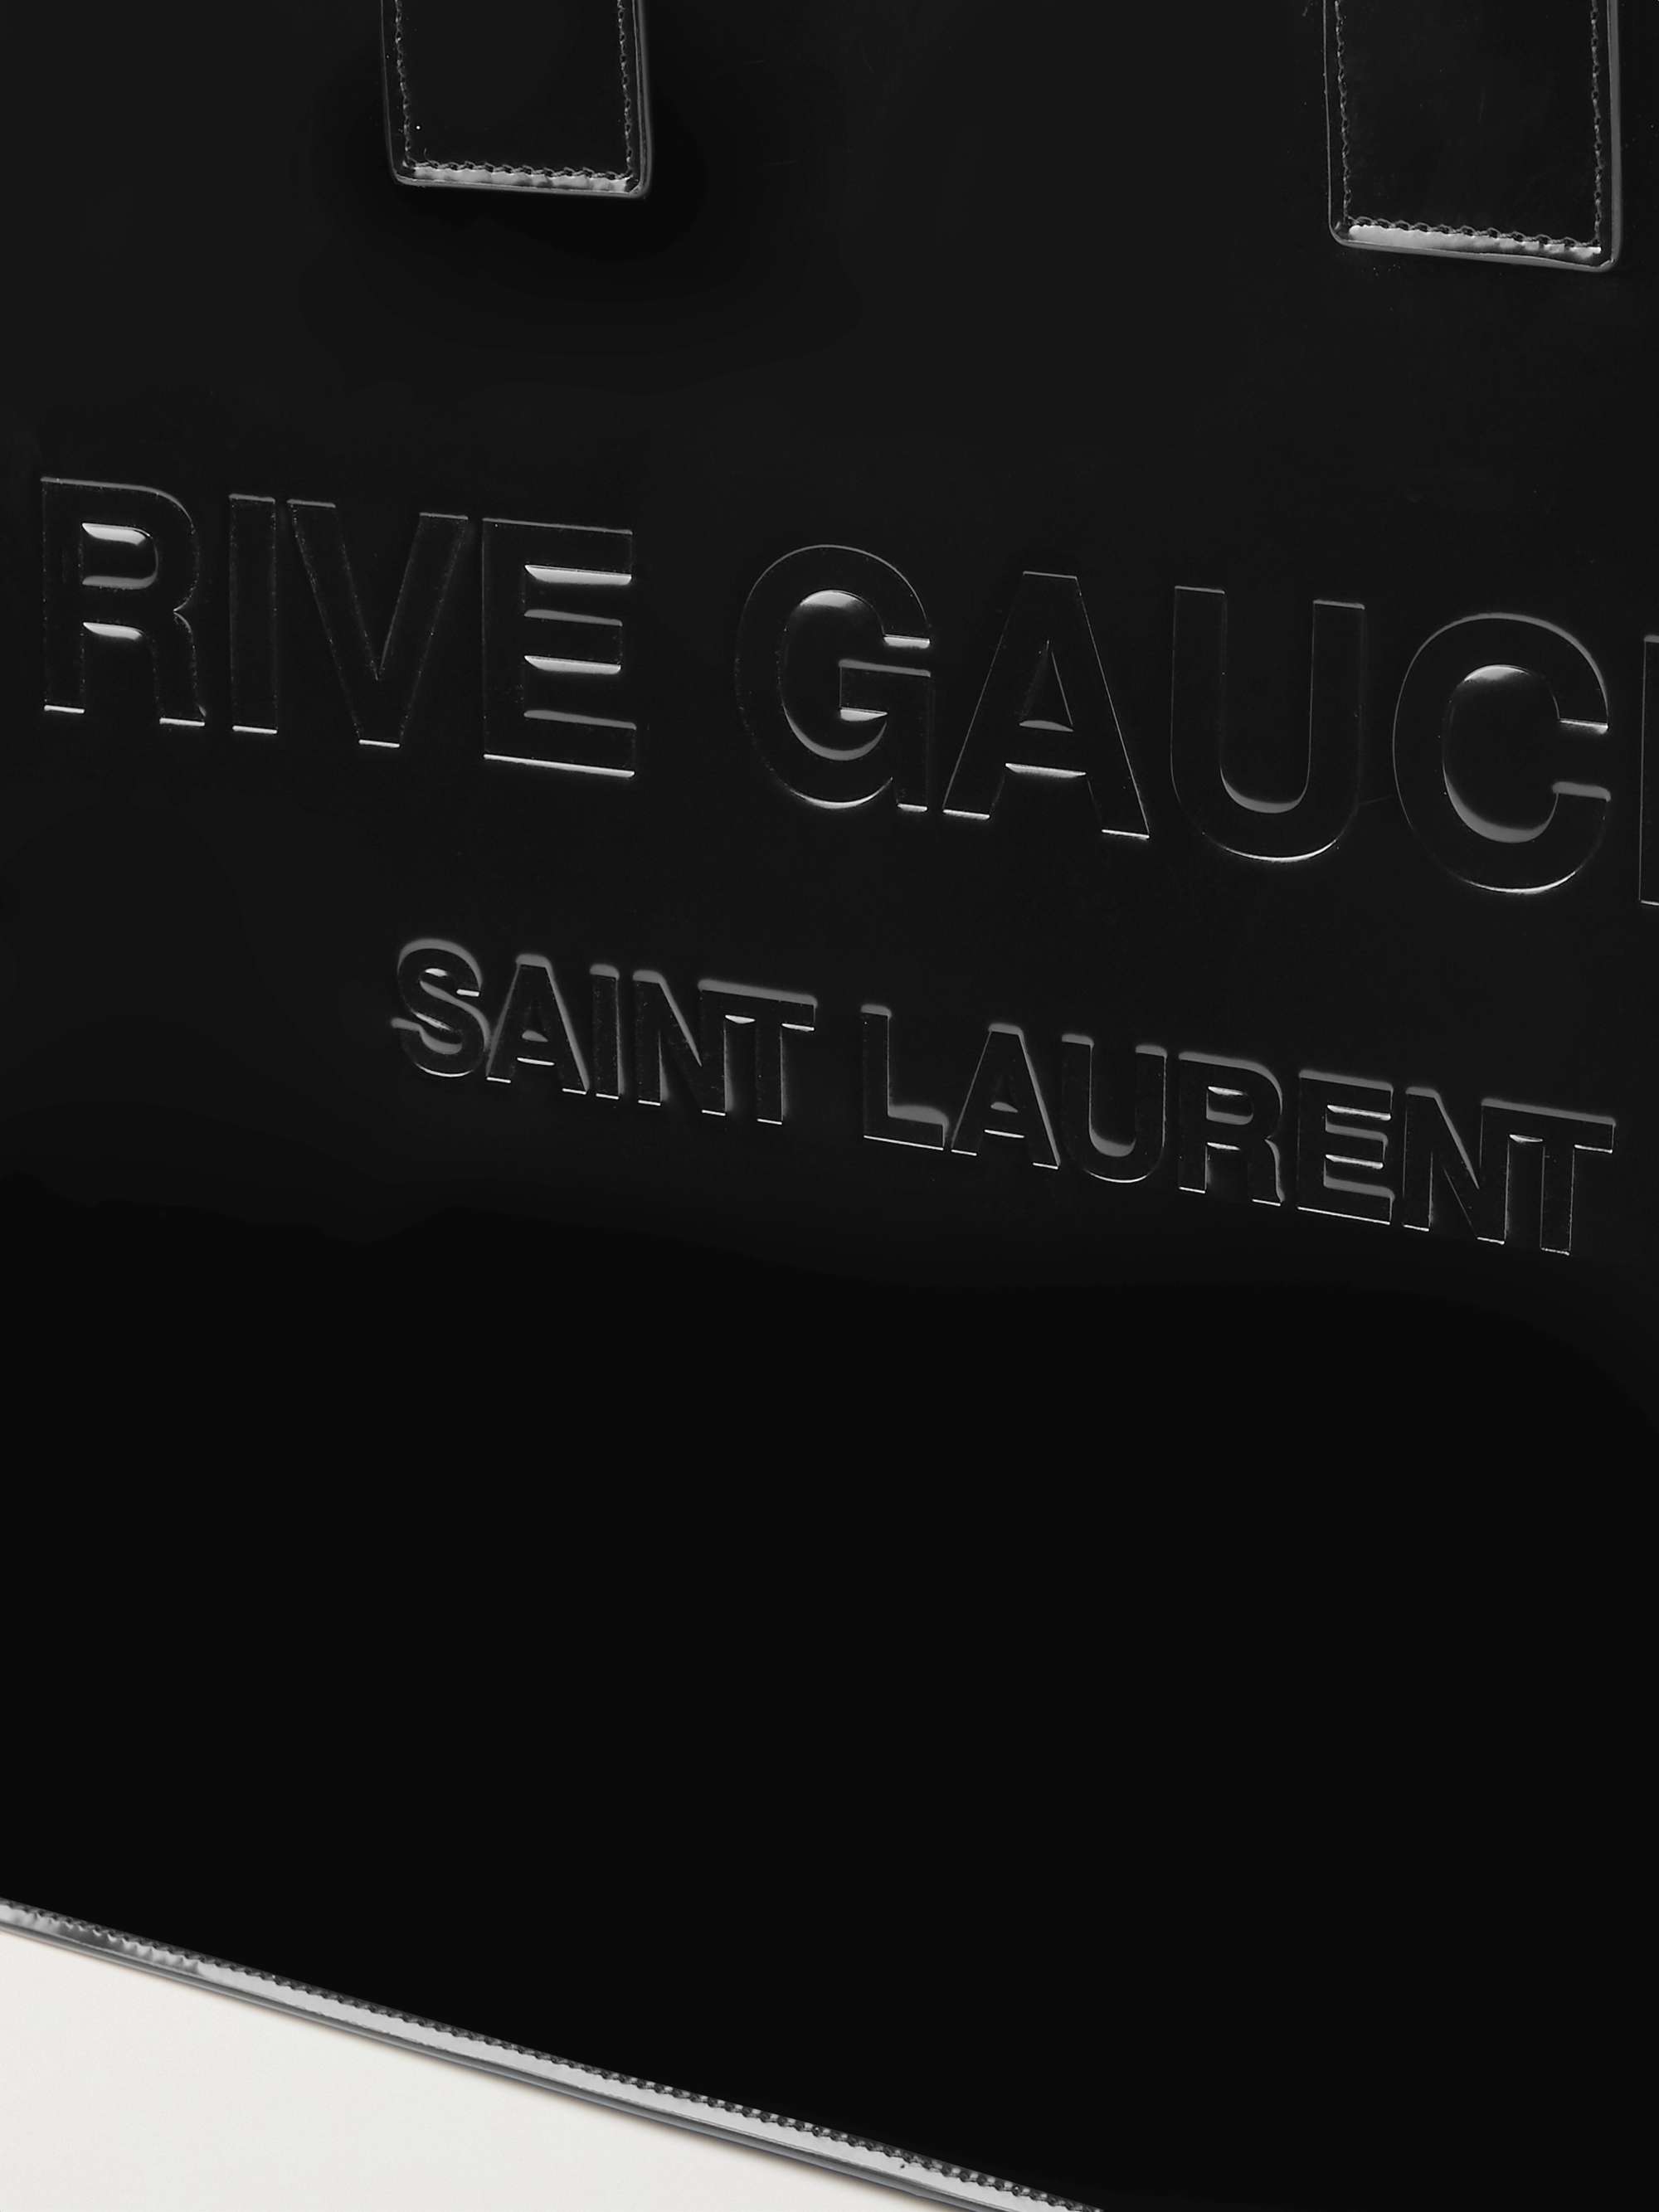 Saint Laurent Men's Rive Gauche Linen and Leather Tote Bag - ShopStyle